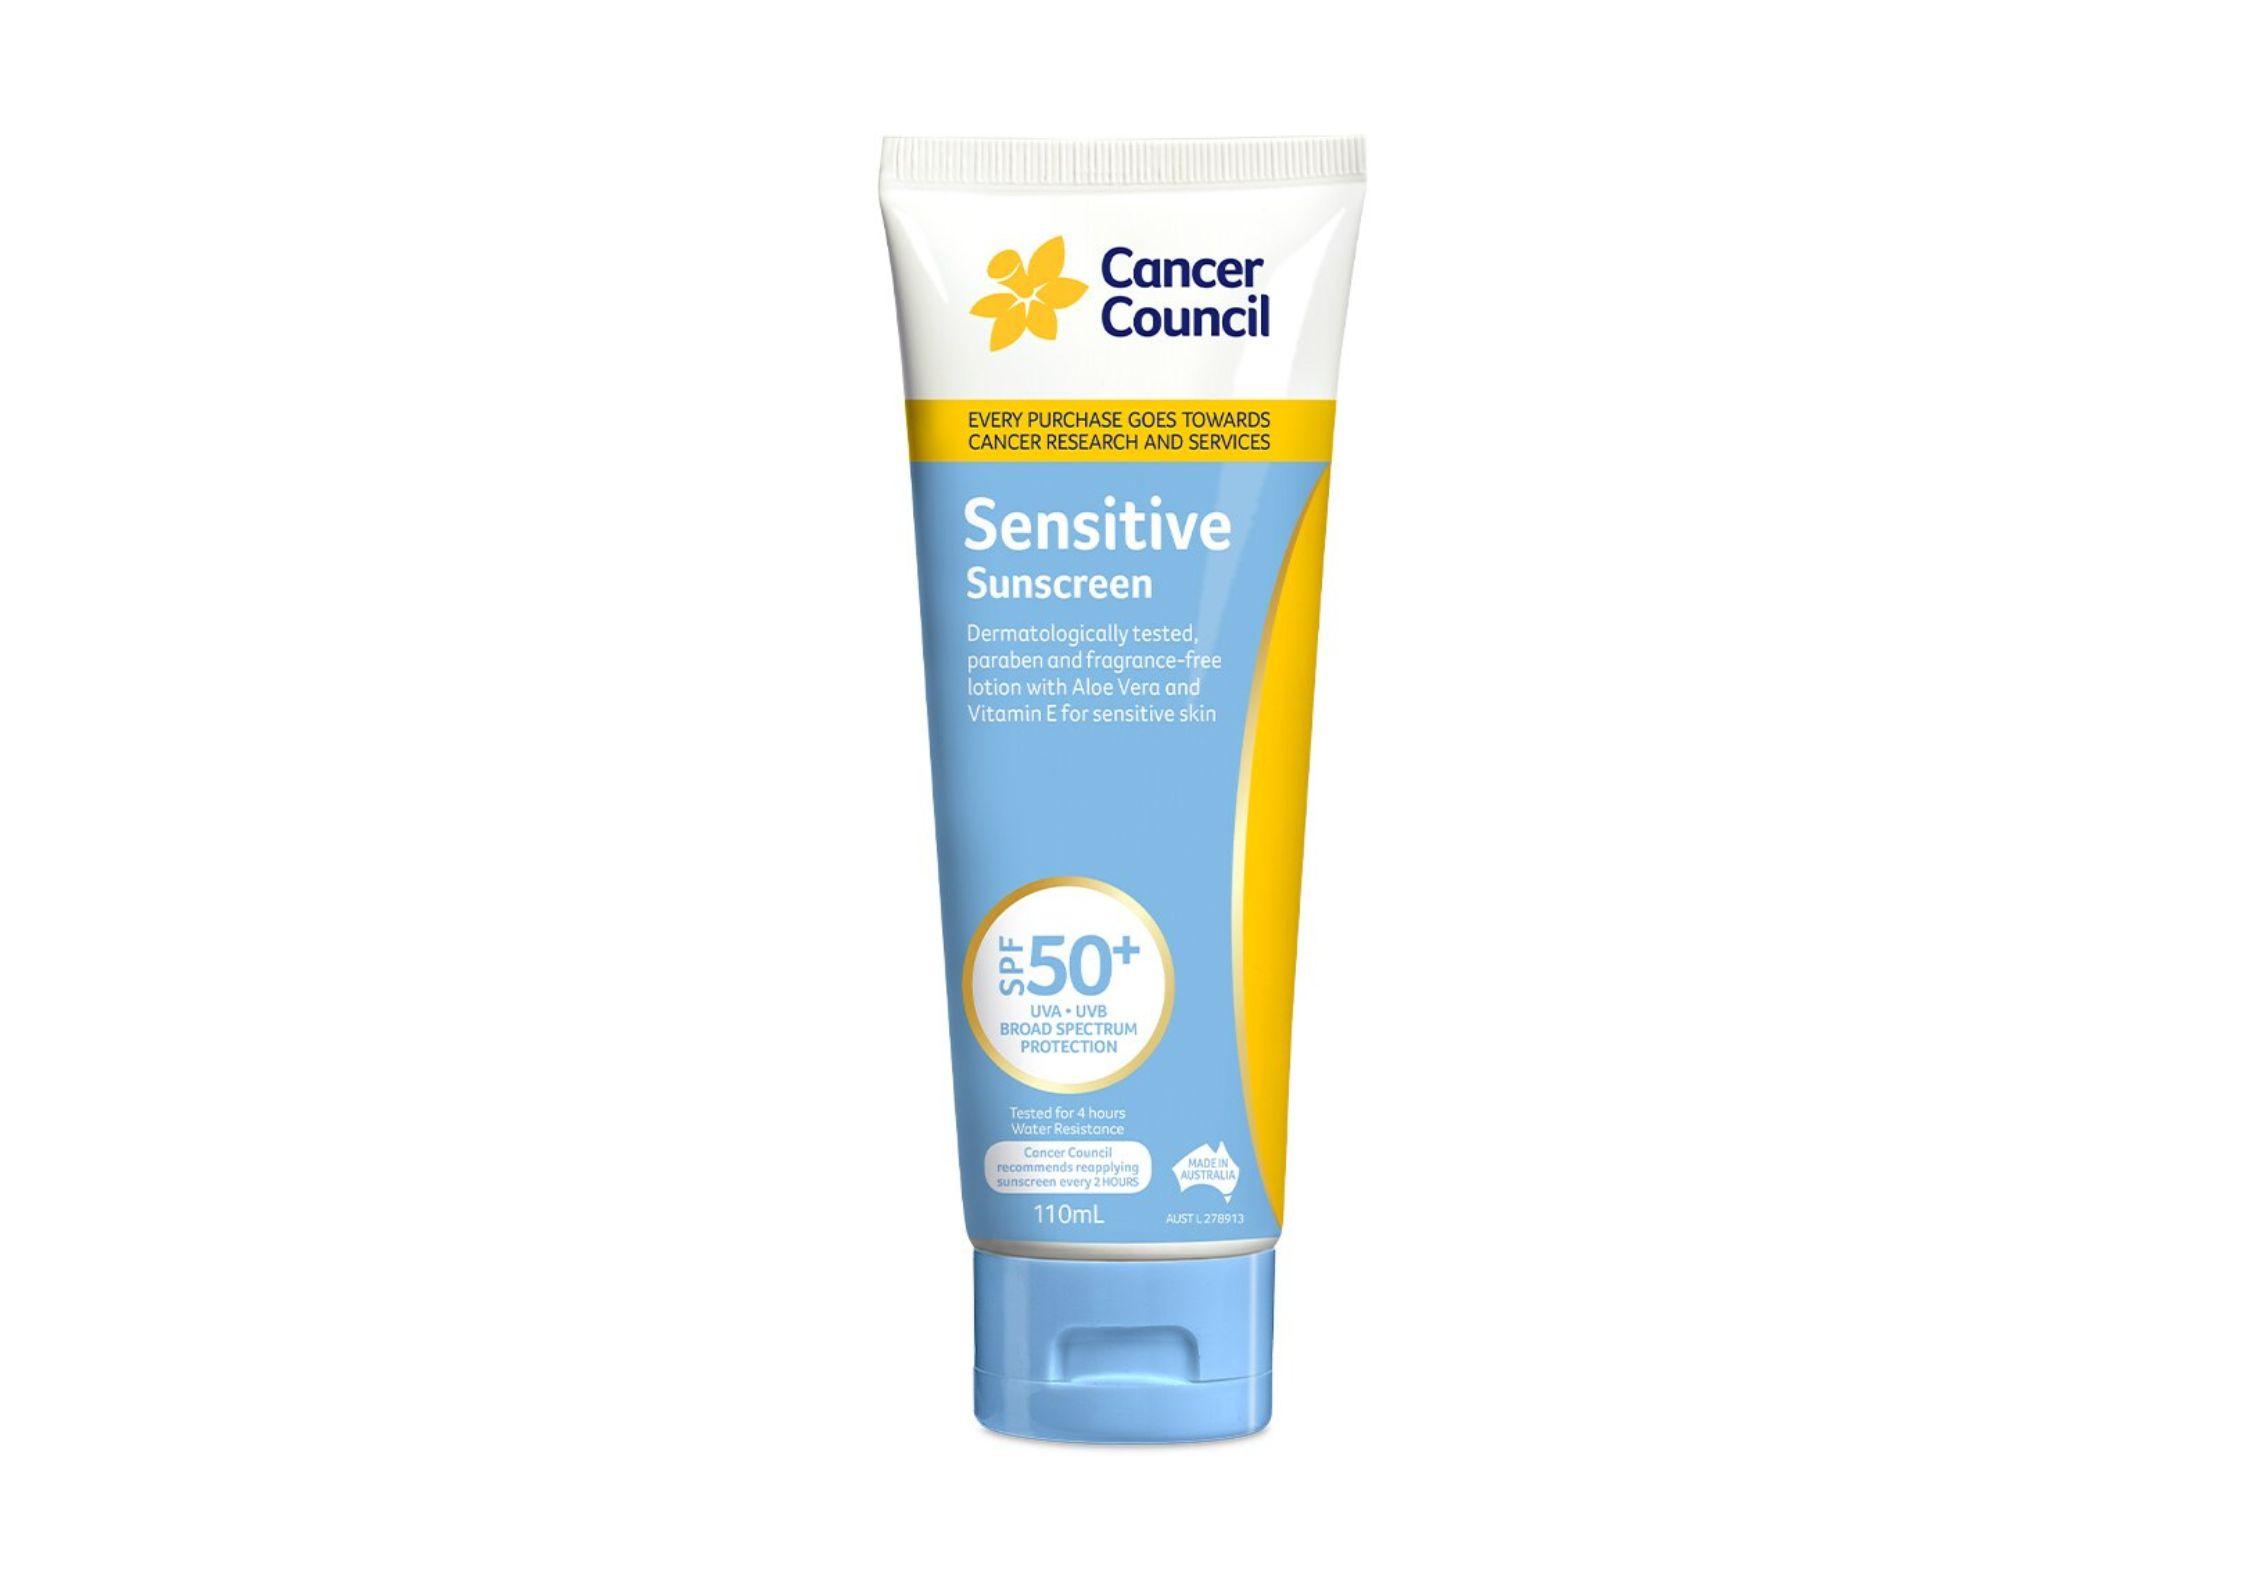 Kem chống nắng dịu nhẹ Cancer Council Sensitive Sunscreen (Ảnh: Internet).